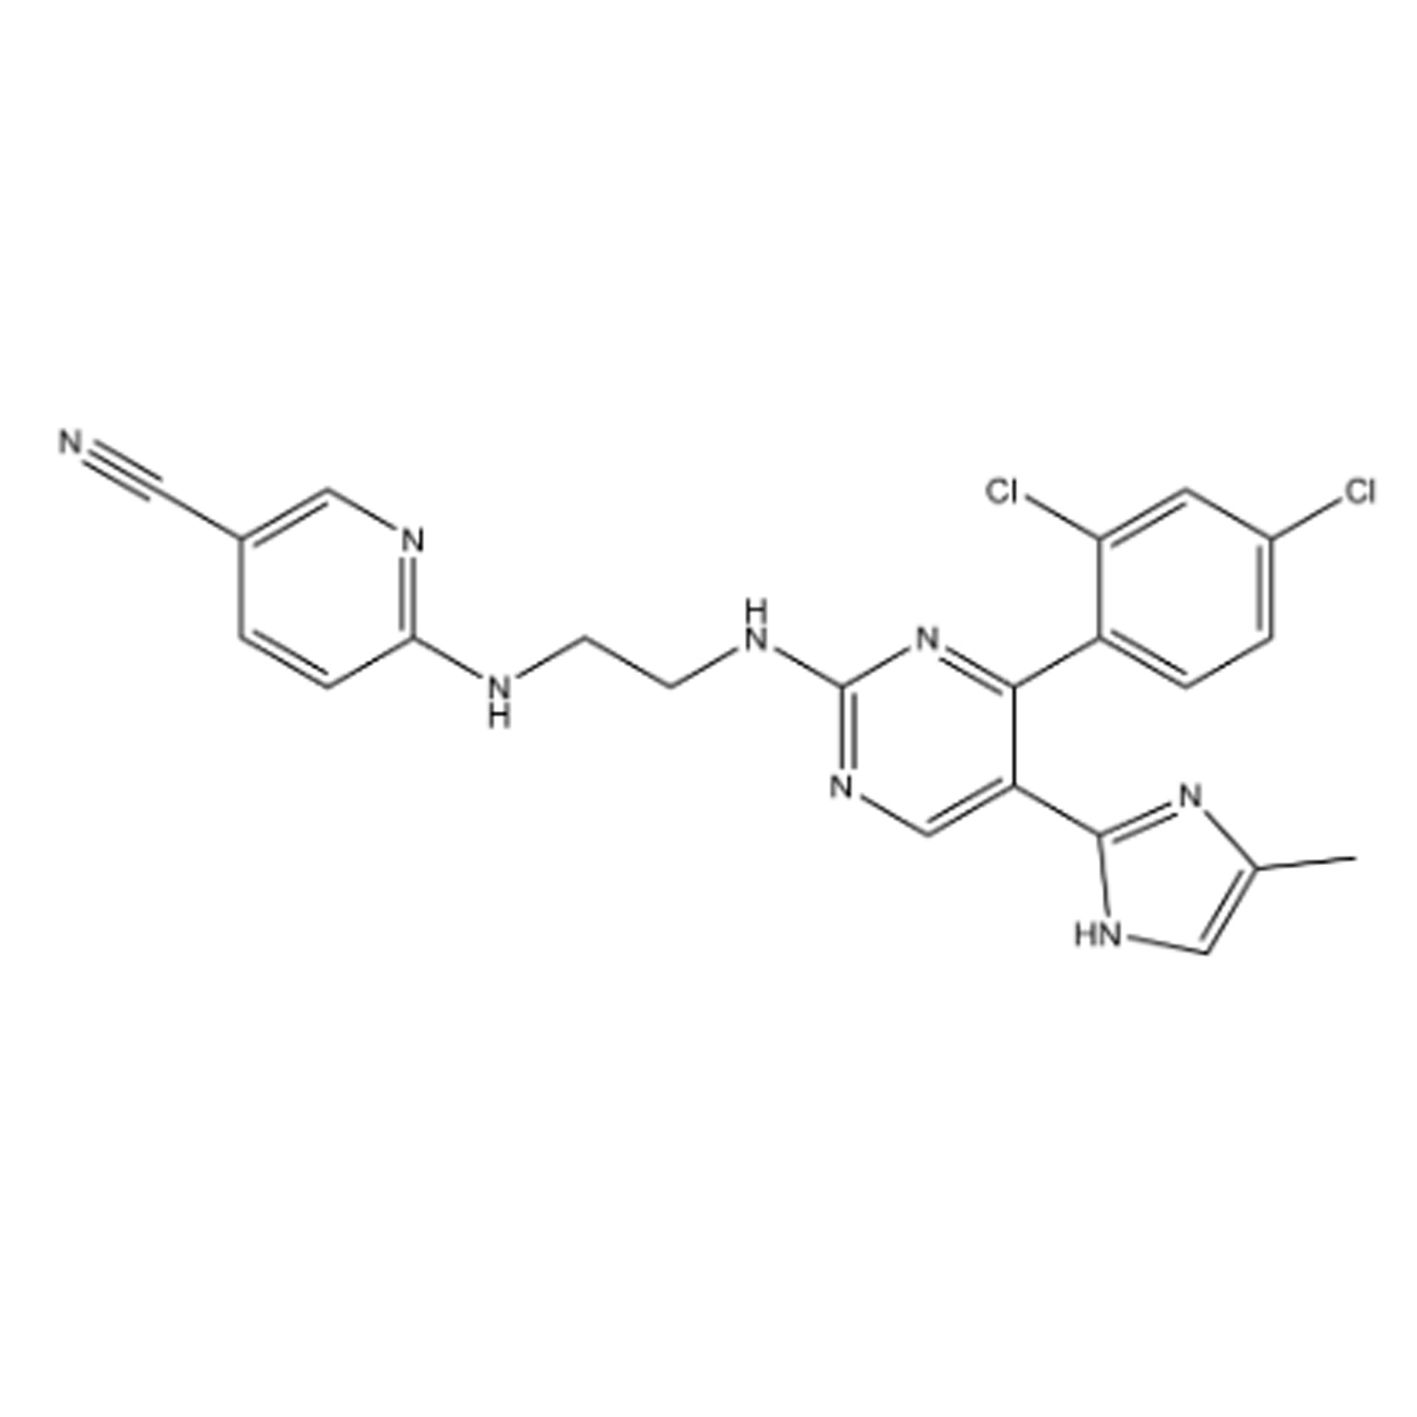 Selleck S1263 CHIR-99021 (CT99021) ,GSK-3x和GSK-3β抑制剂